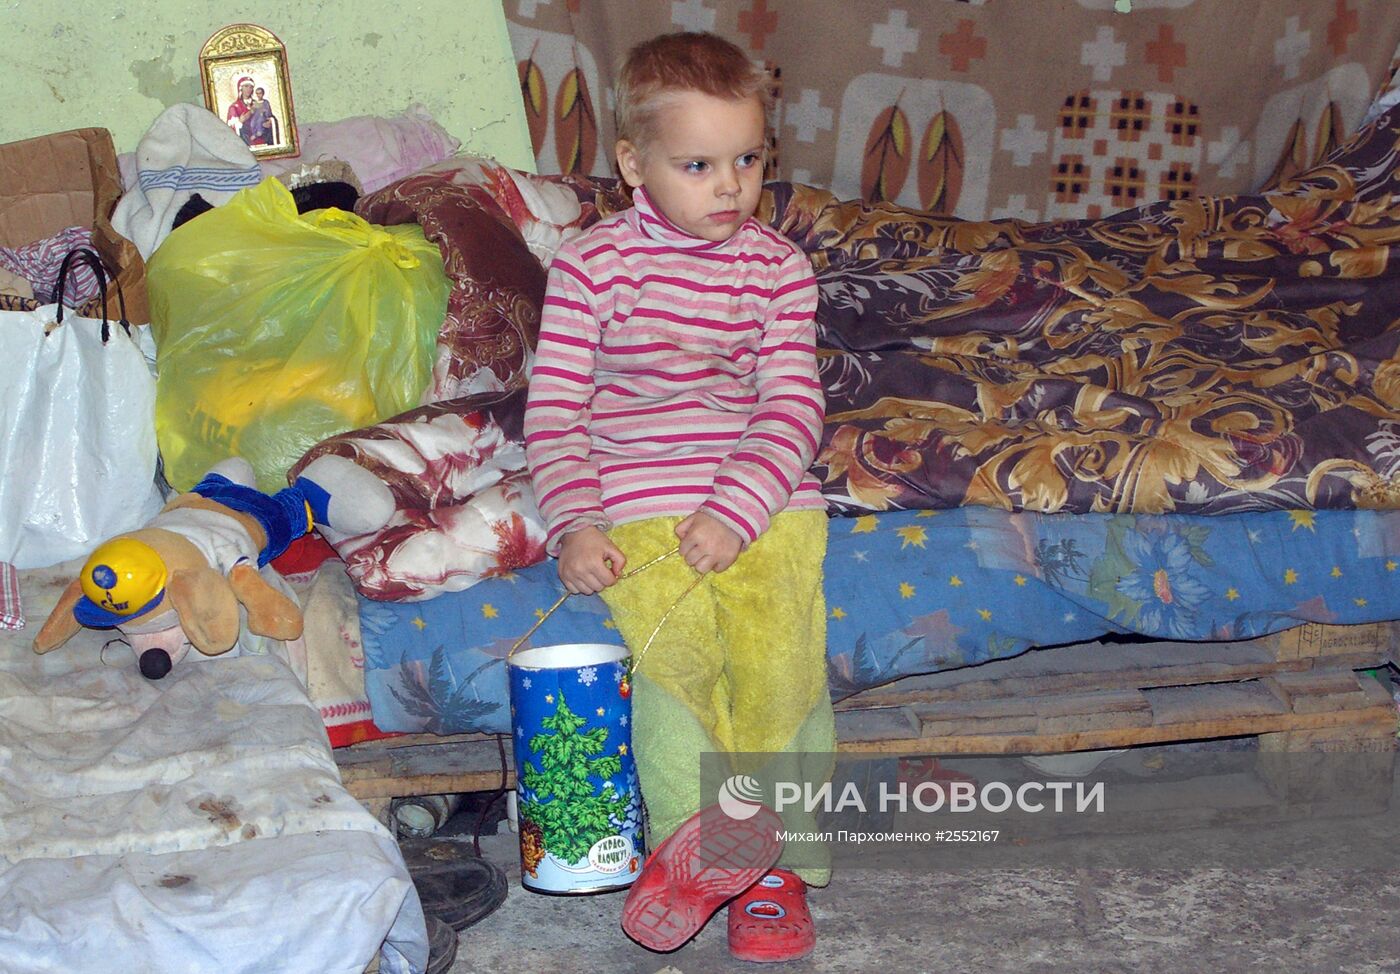 Жители Донецка, потерявшие свое жилье, готовятся встретить Новый год в бомбоубежище